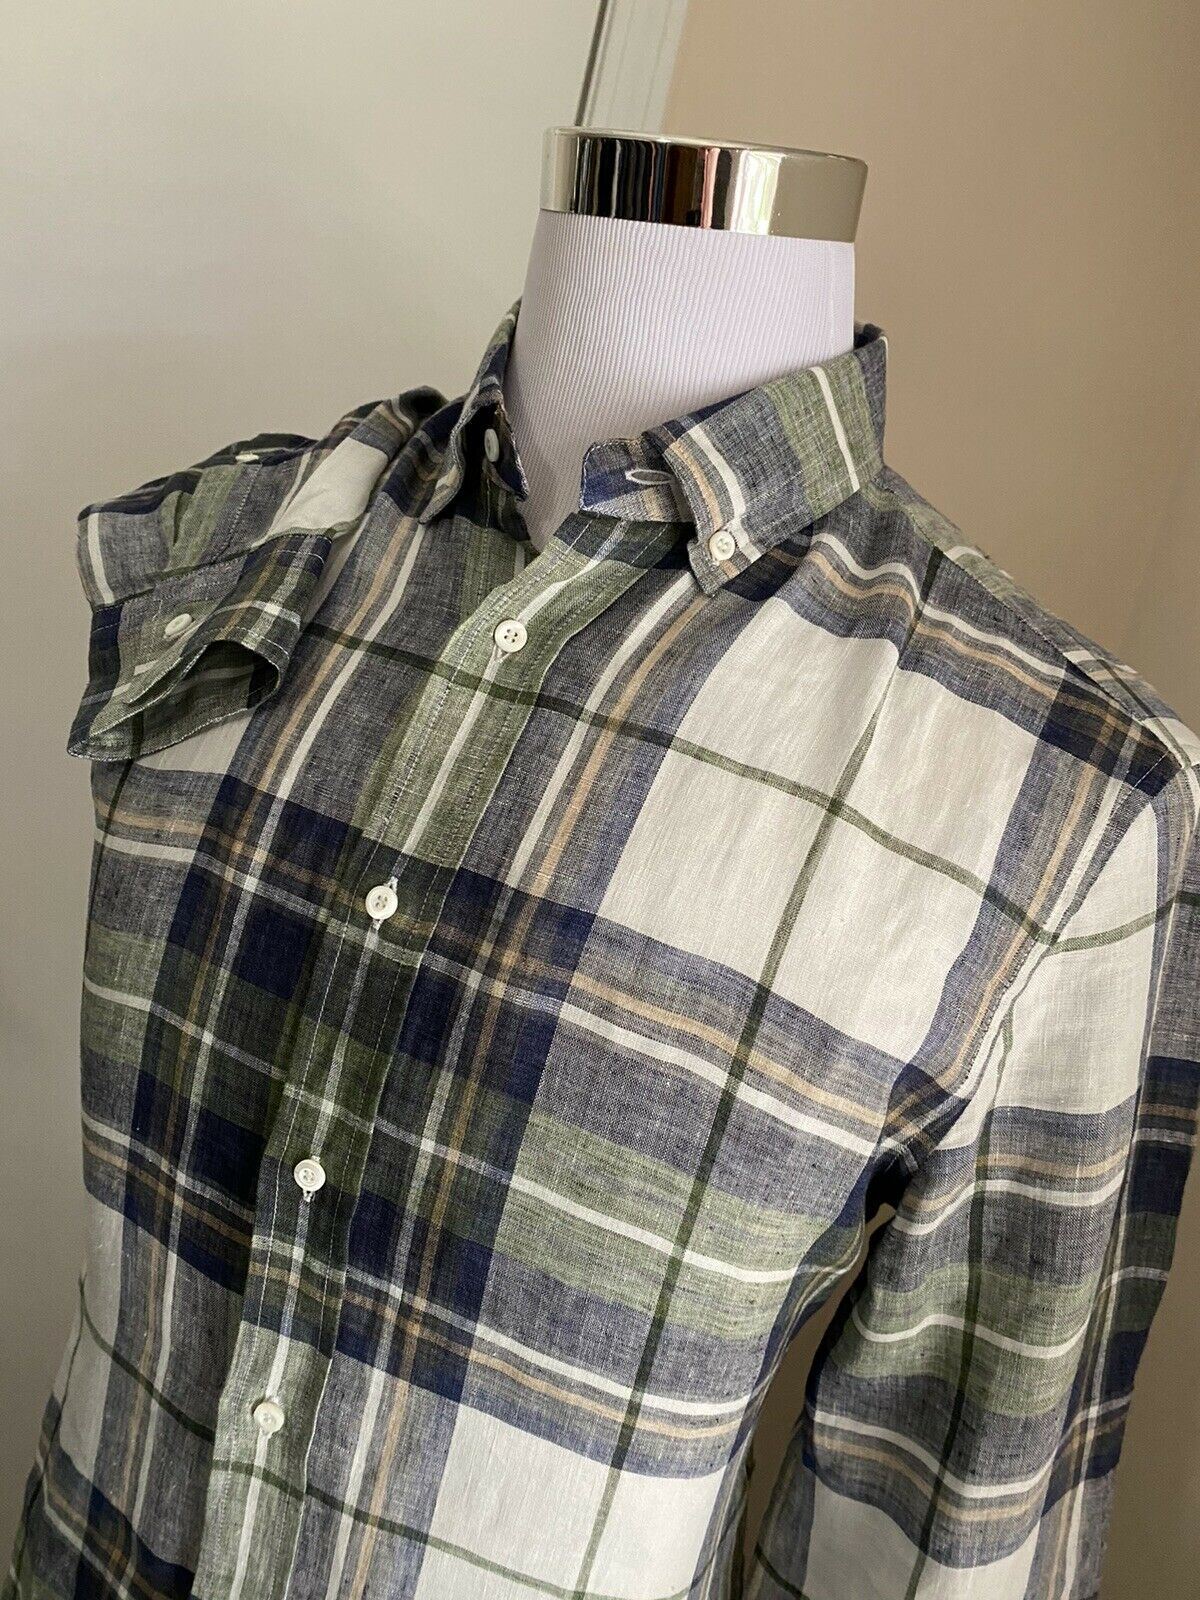 NWT $625 Brunello Cucinelli Мужская льняная классическая рубашка свободного кроя синяя/зеленая L